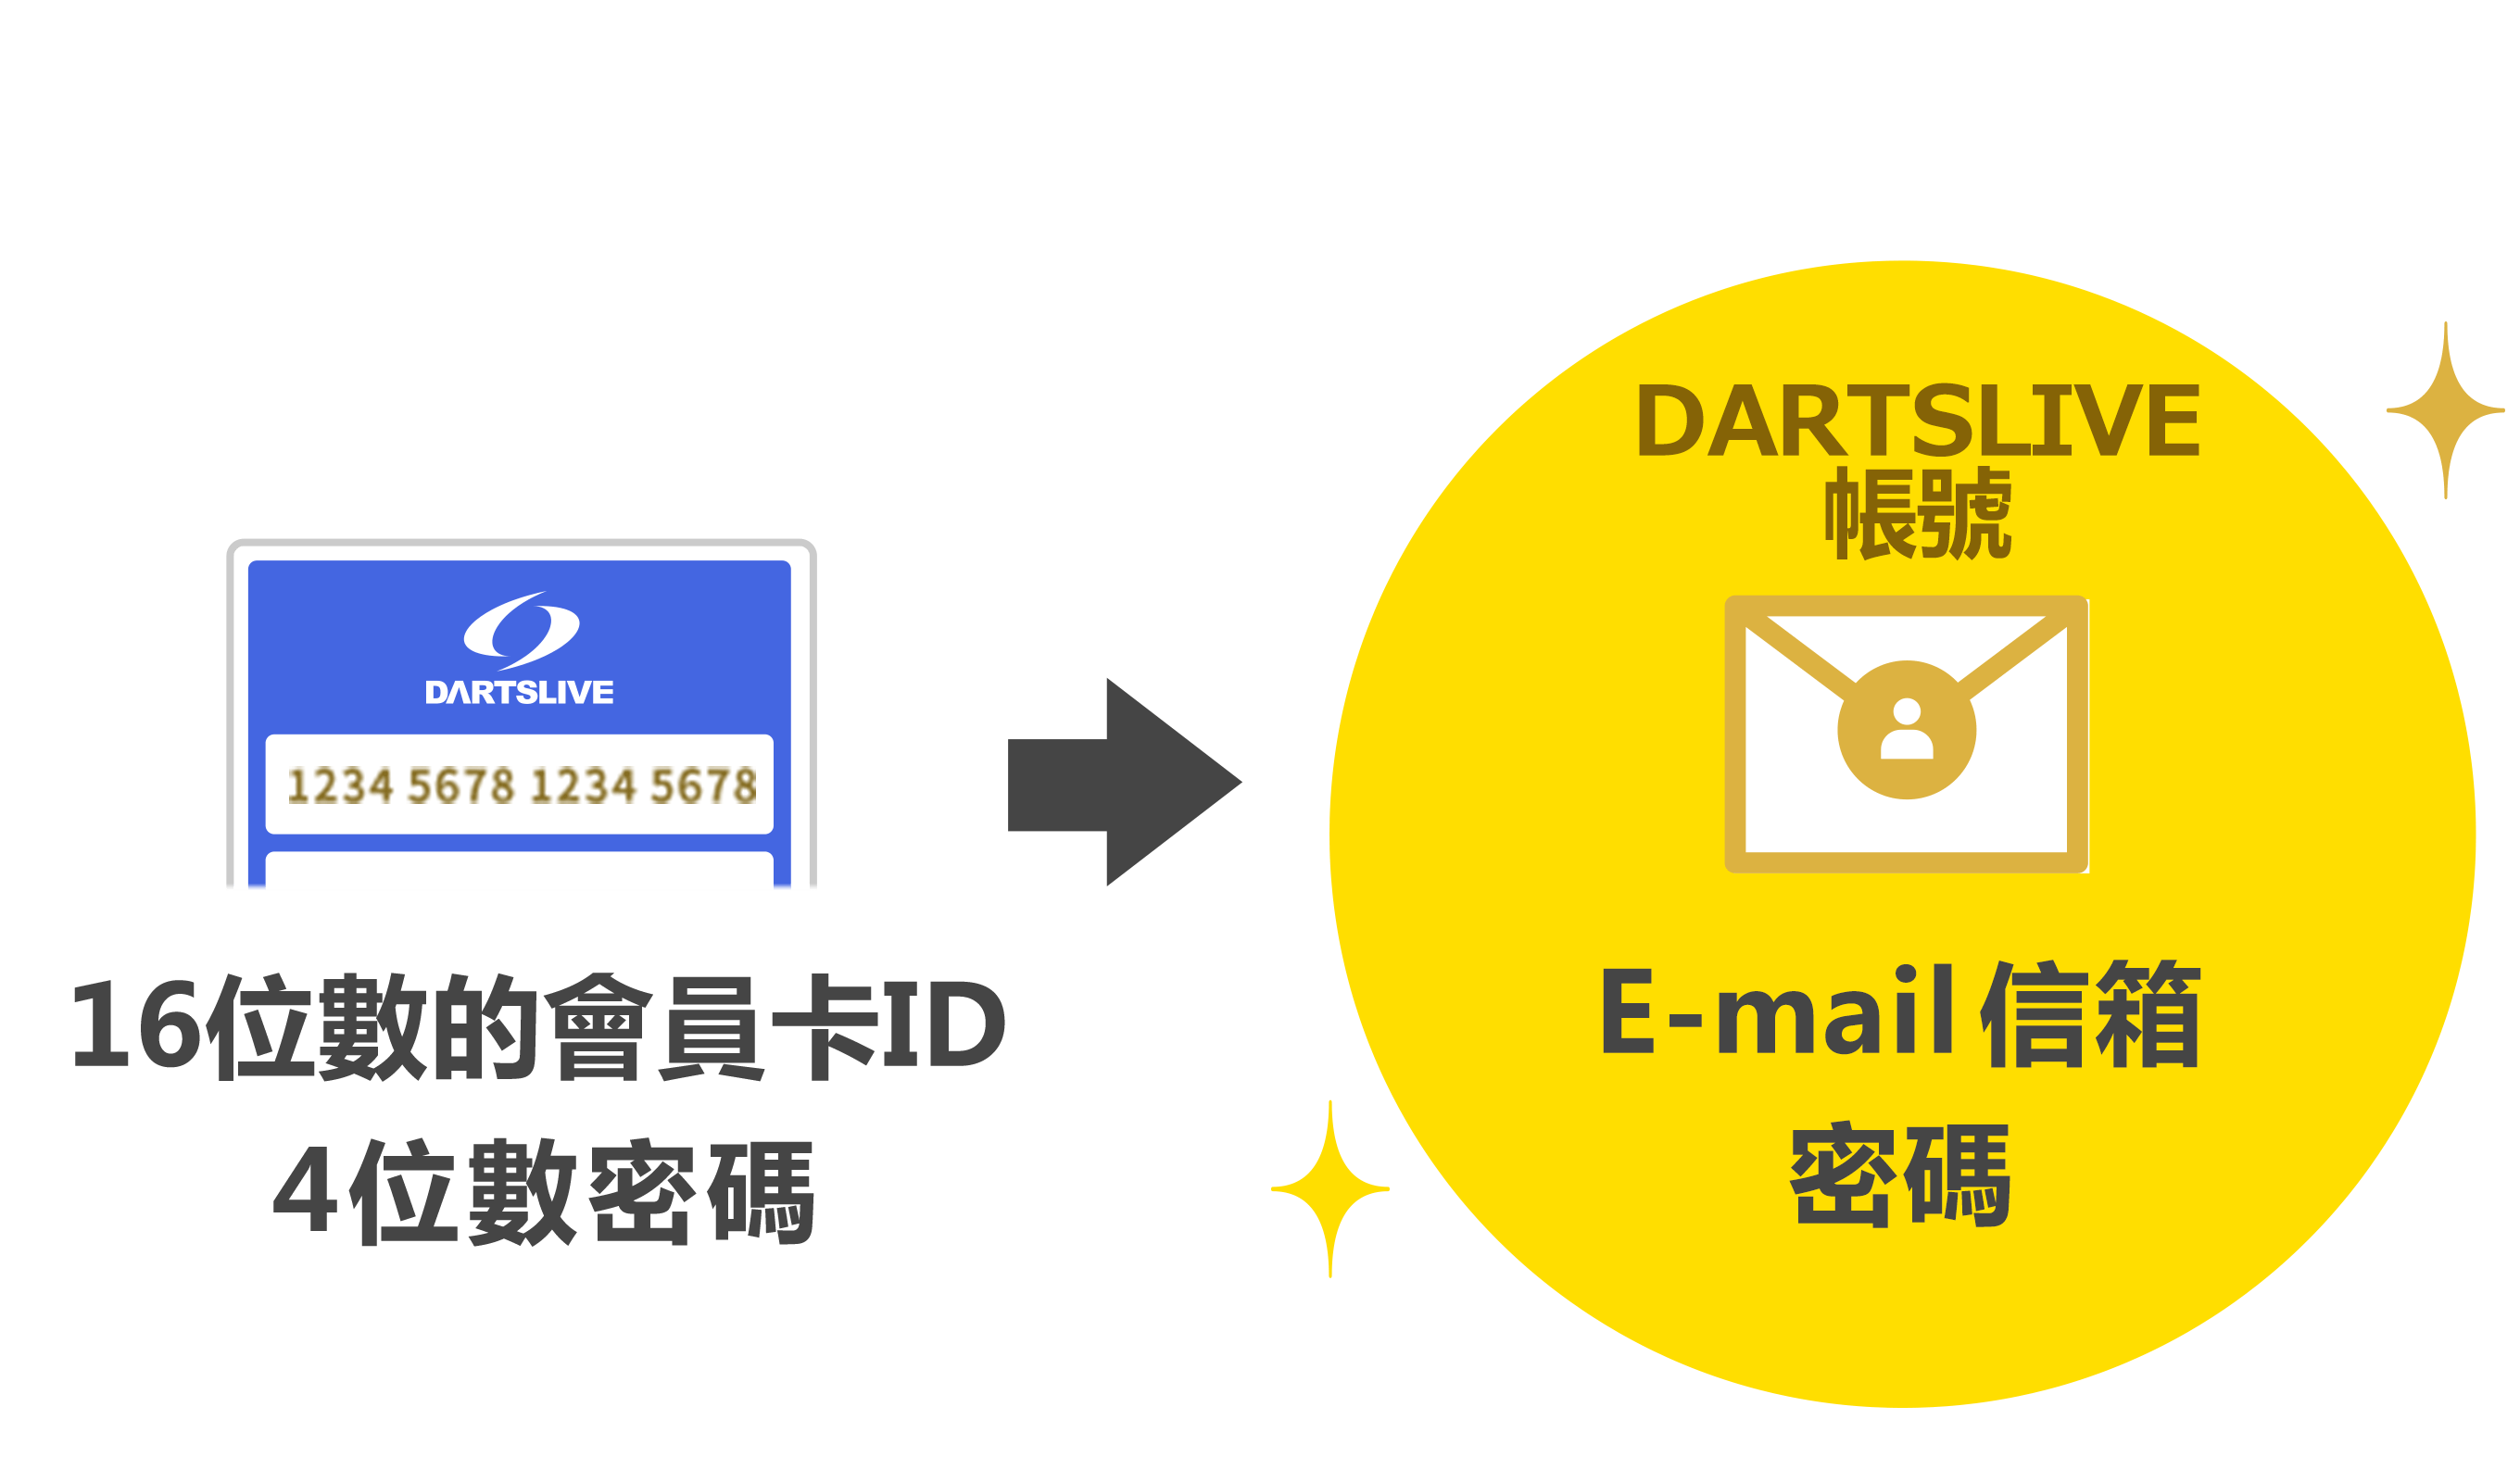 16位數的會員卡ID 4位數密碼 → DARTSLIVE帳號 E-mail信箱 密碼